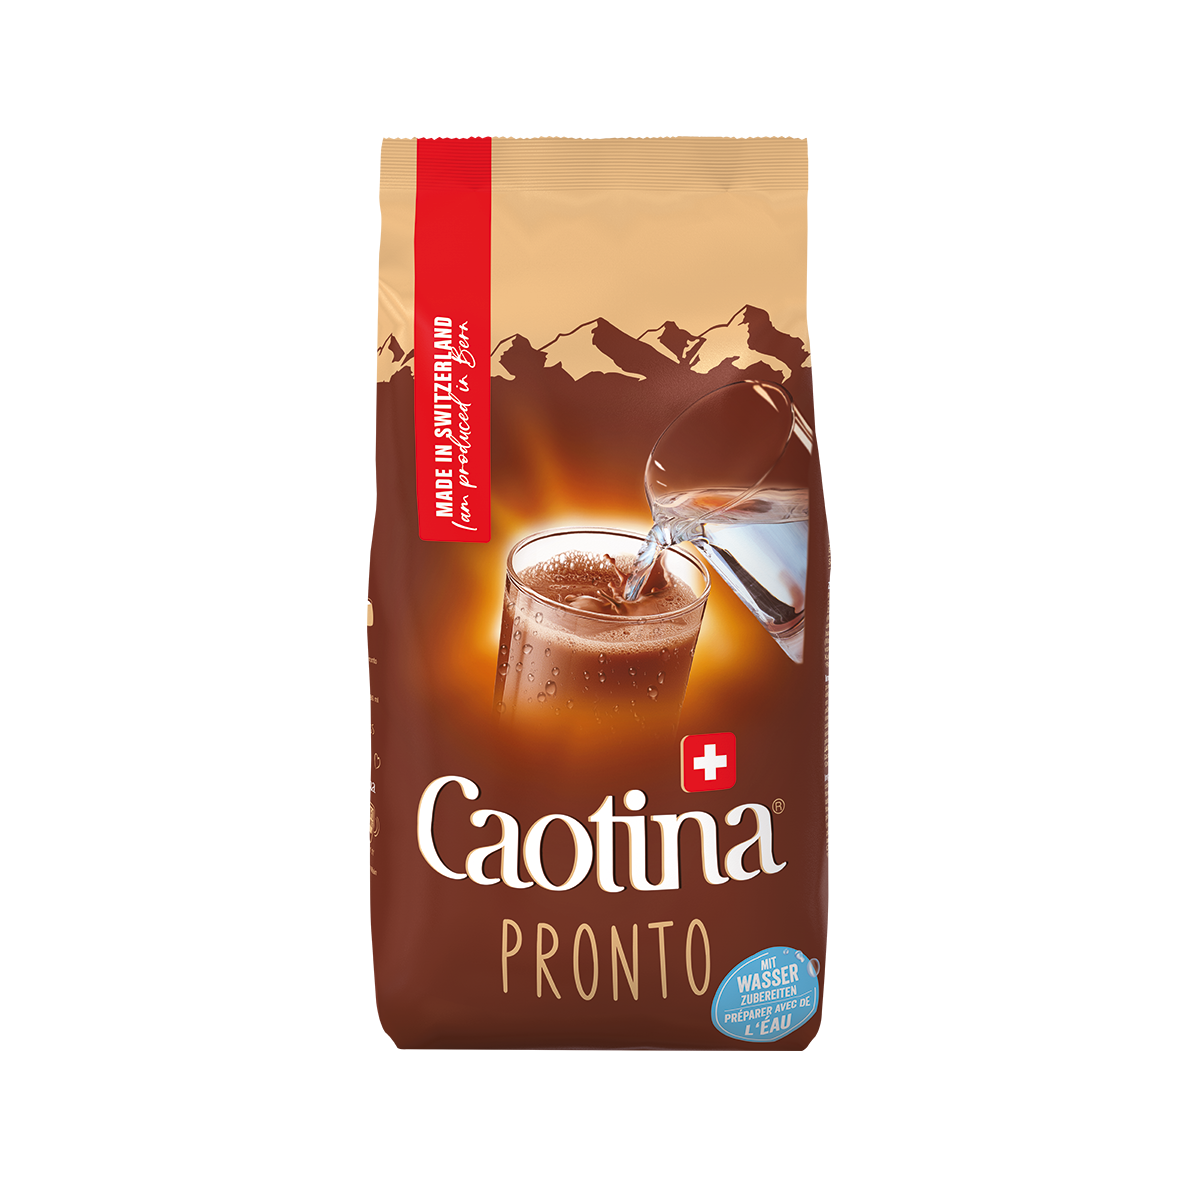  Caotina Pronto - le cacao à boire soluble dans l’eau